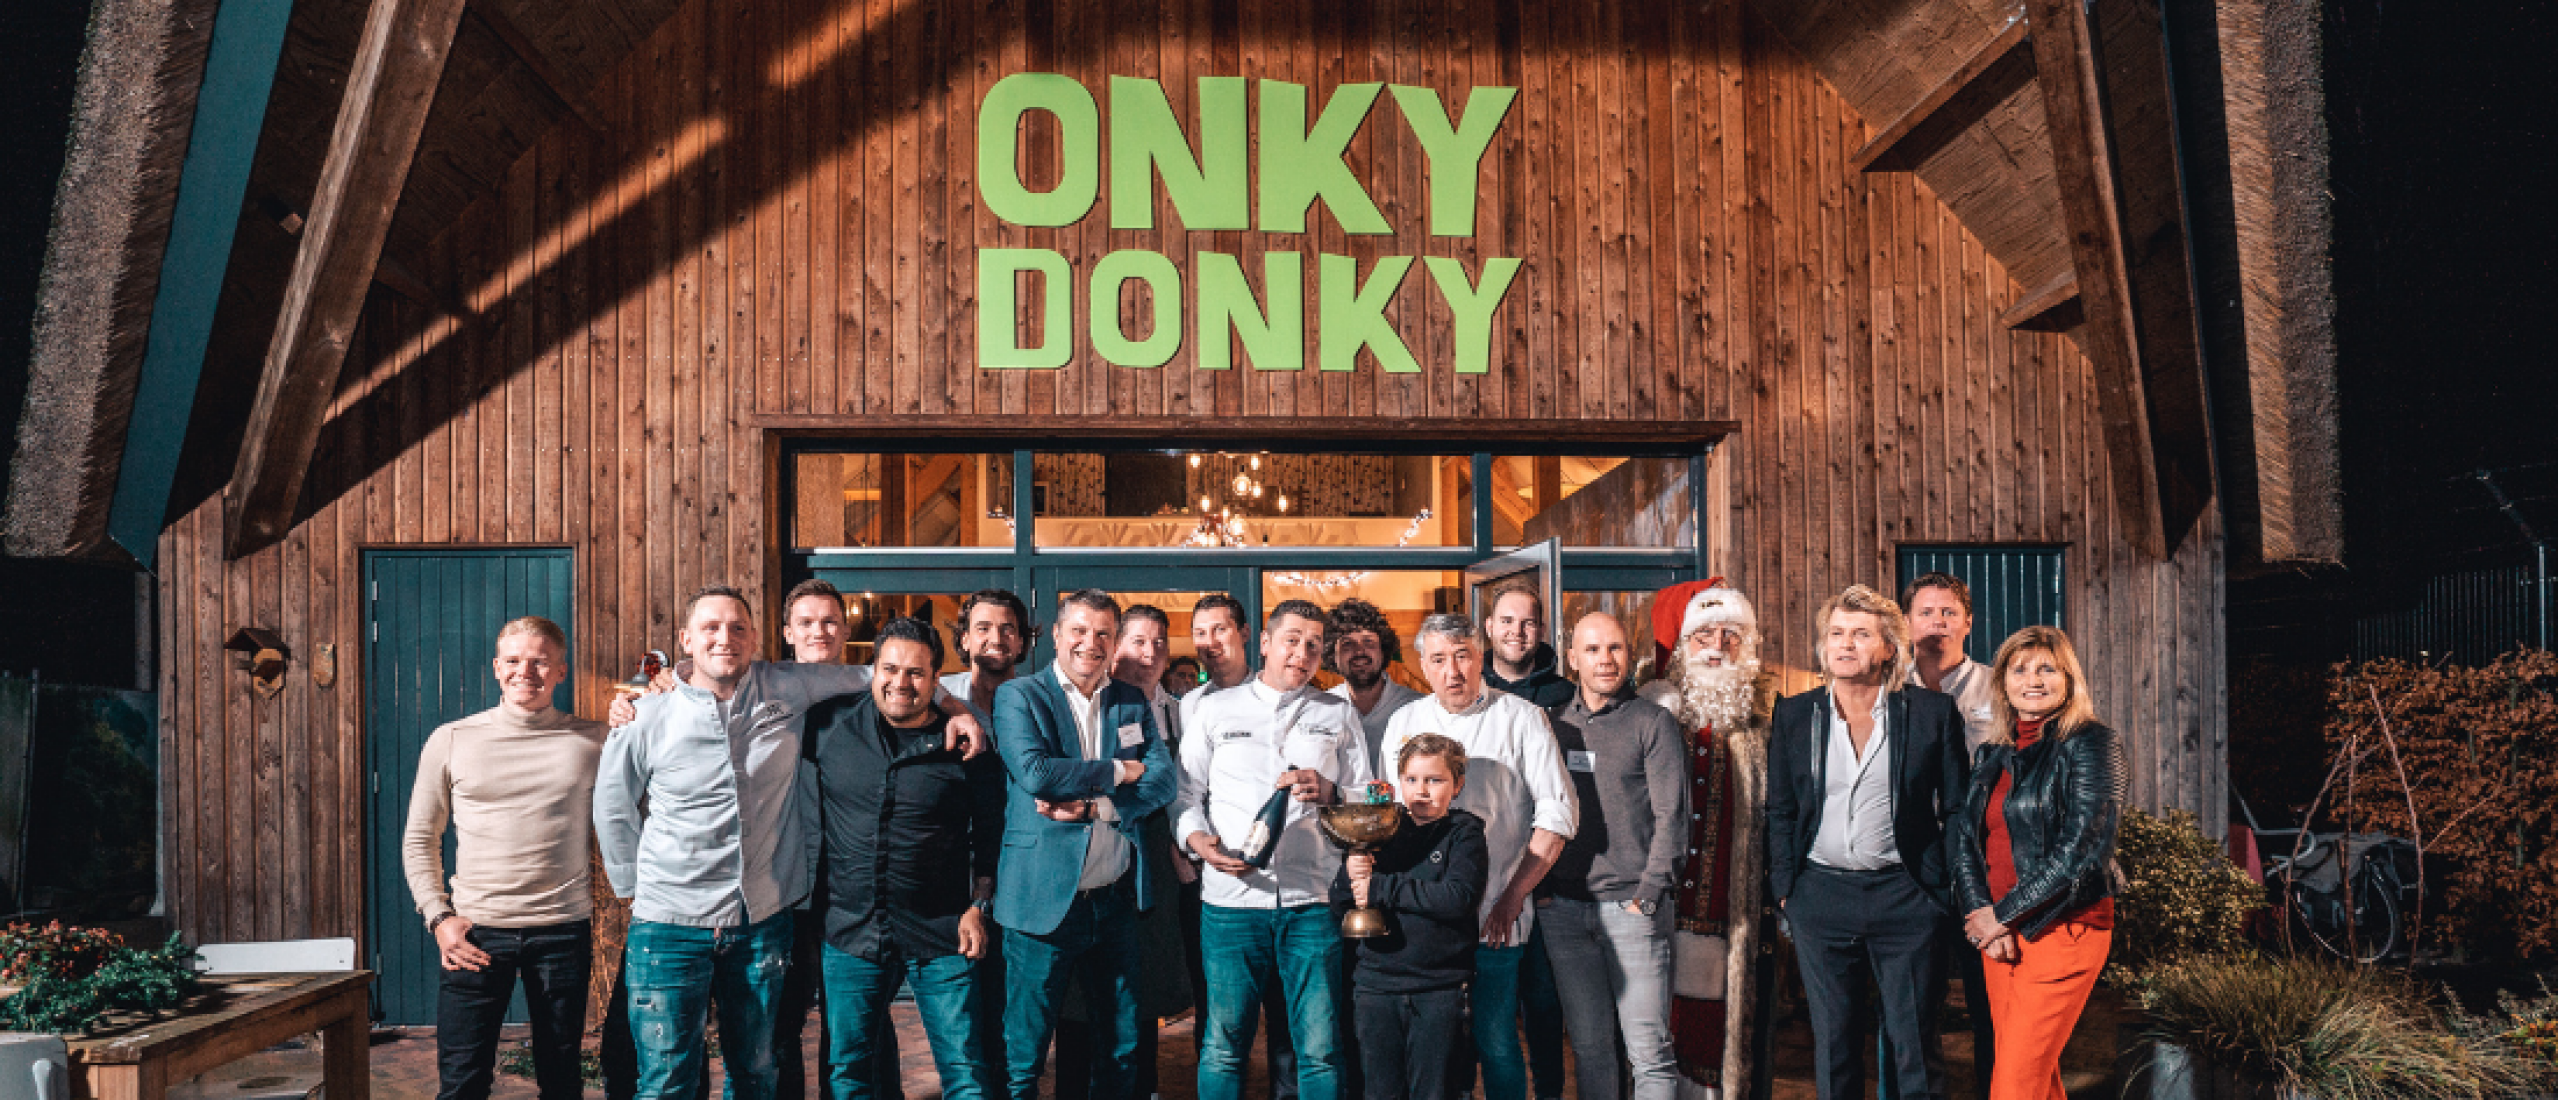 Topchef Lars van Galen van ’t Lansink*, winnaar Culinaire Oliebollen Challenge 2021 voor het goede doel, Stichting Onky Donky.